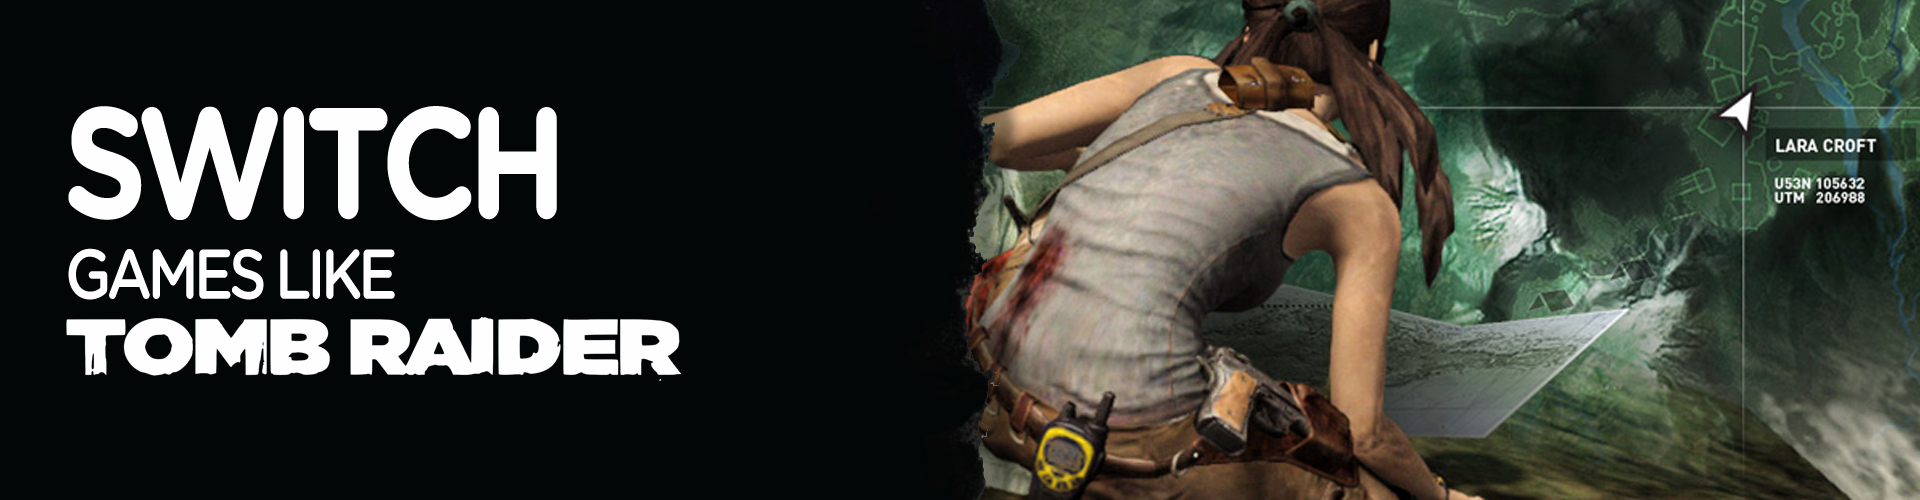 I Migliori Giochi Come Tomb Raider per la Switch